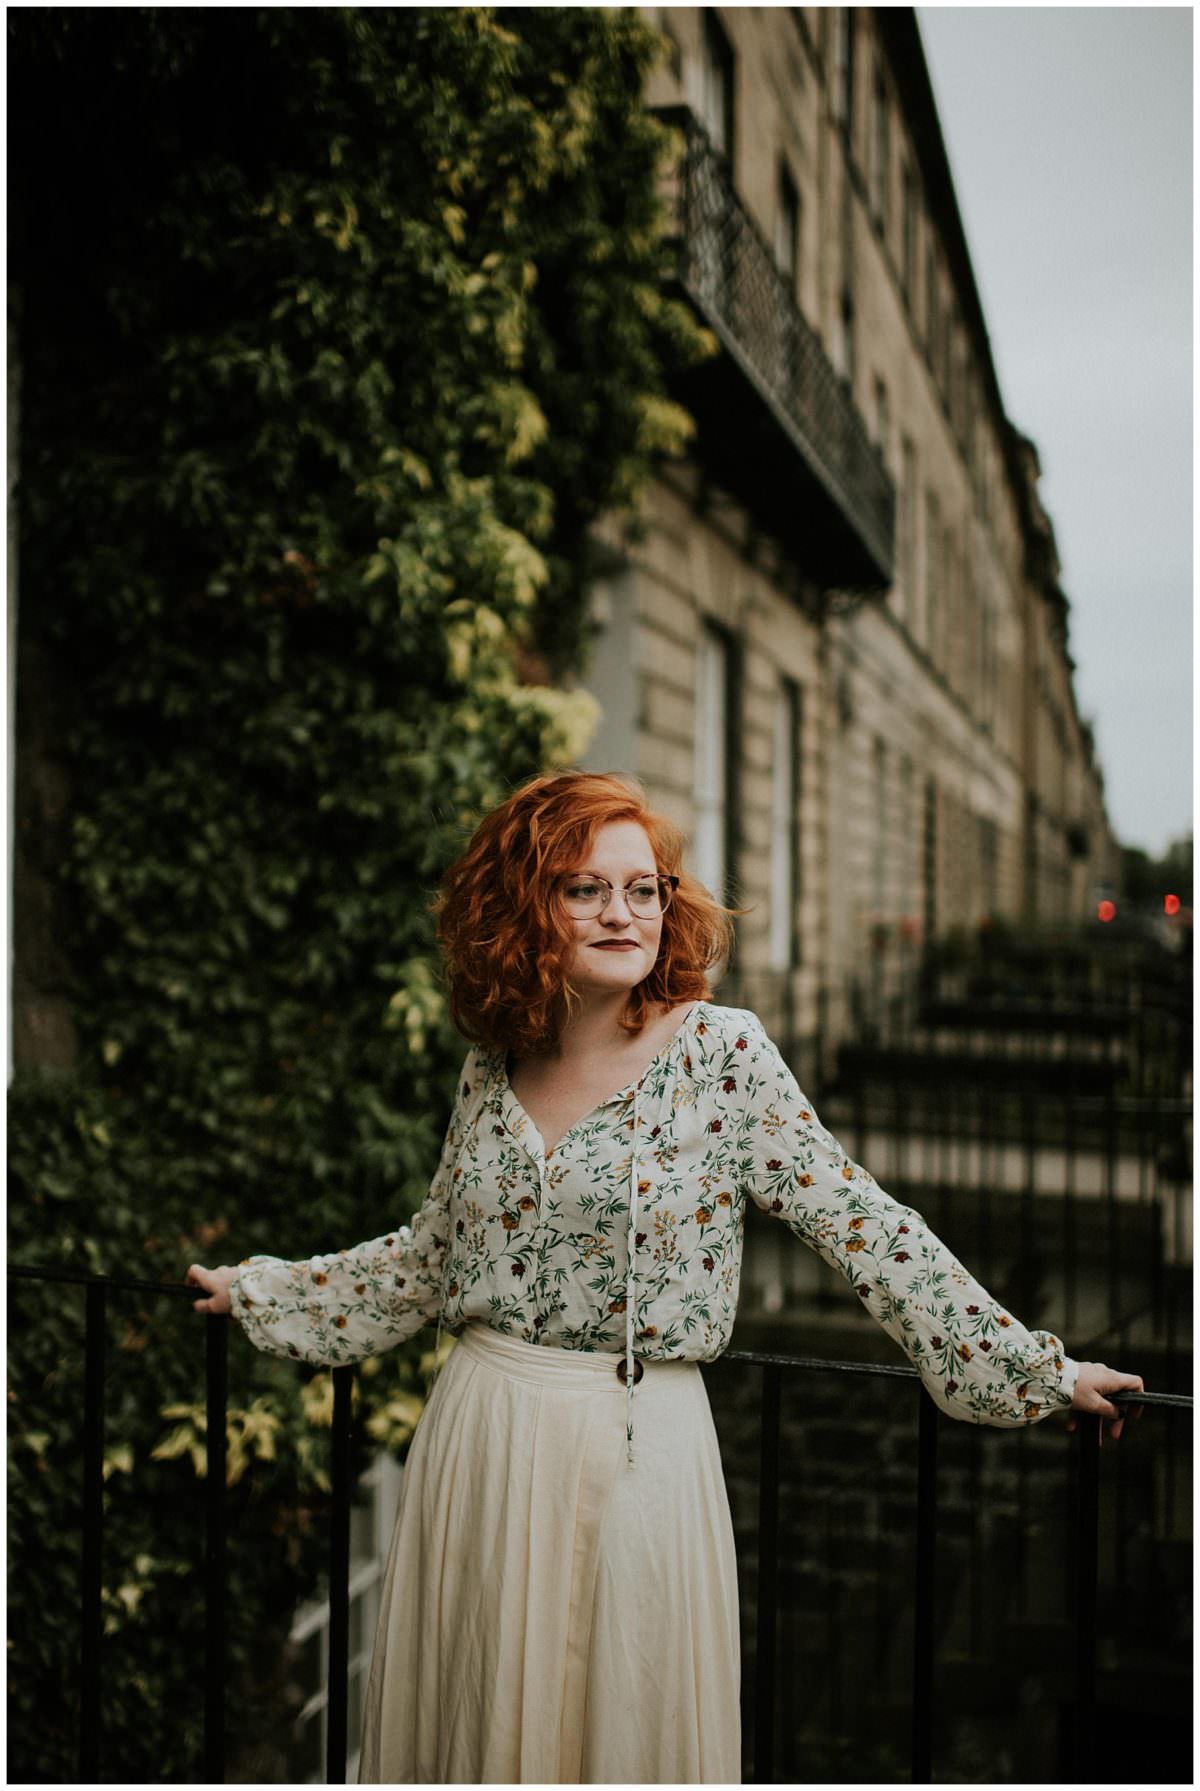 Edinburgh portrait photography session - Scotland portrait photographer